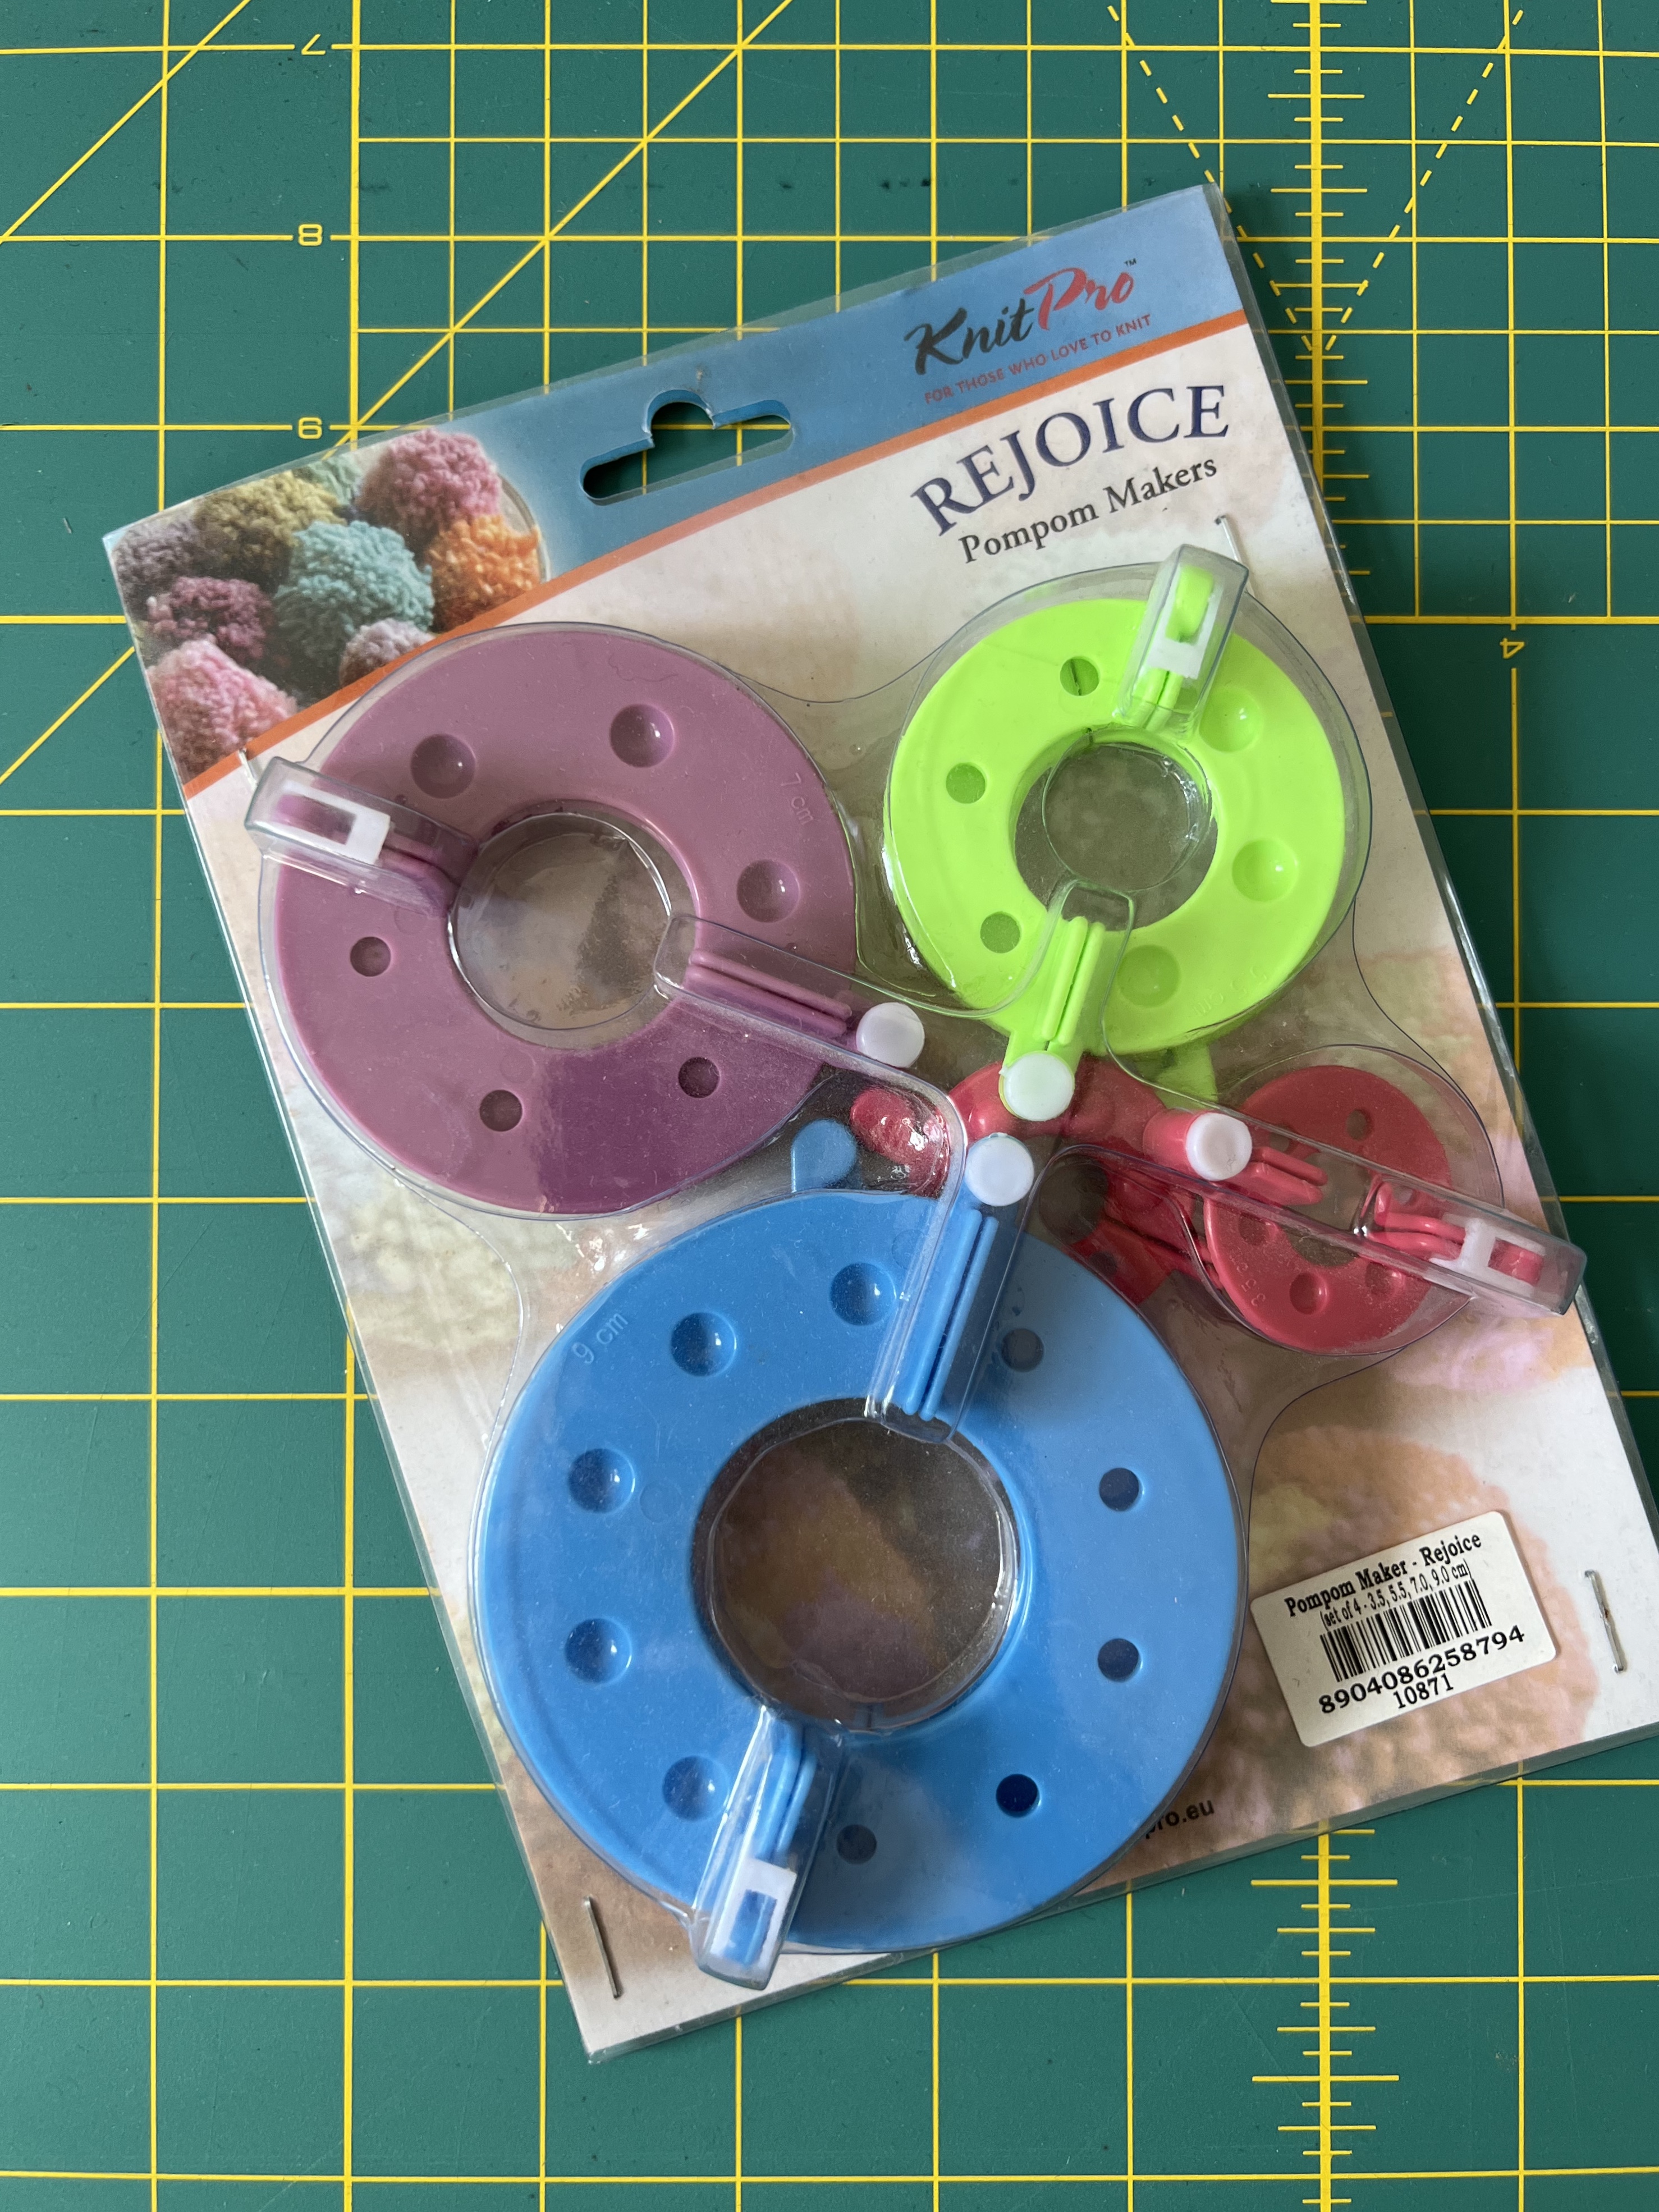 KnitPro Rejoice Pompom Makers